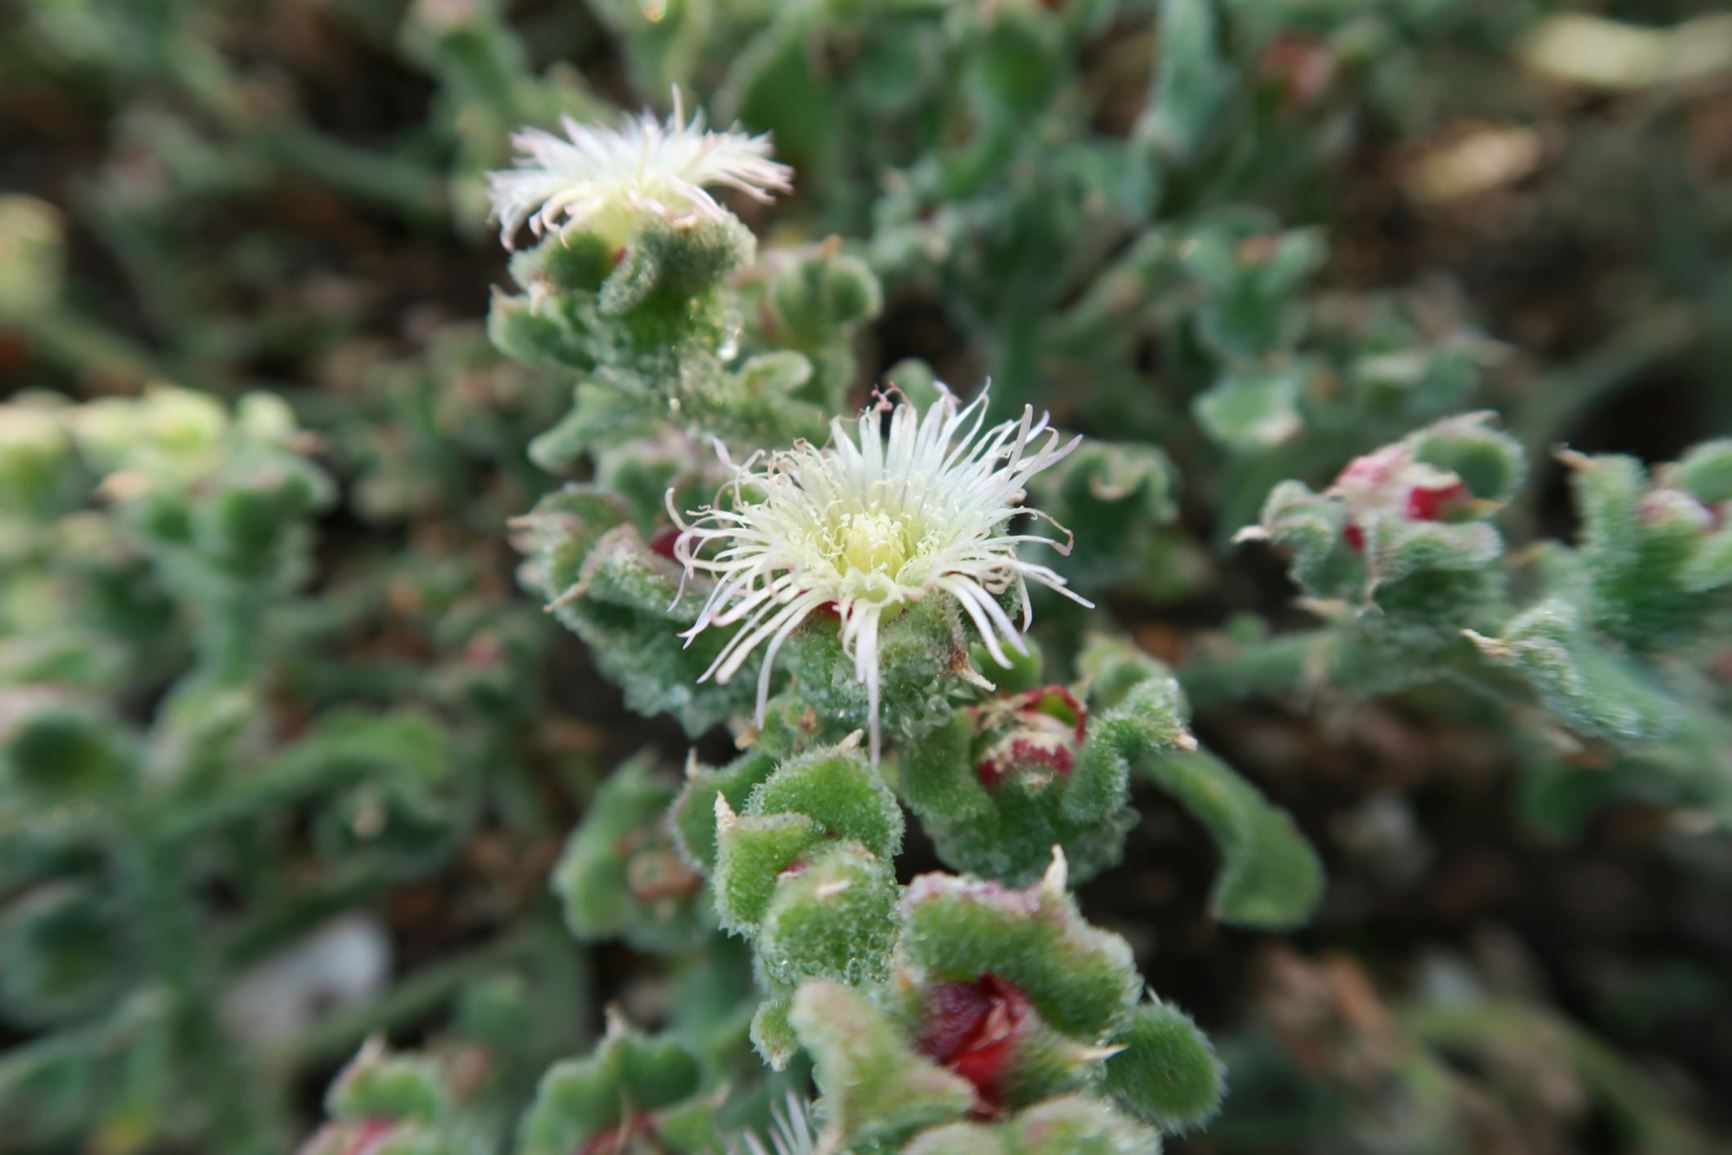 Mesembryanthemum crystallinum - Eiskraut, ice plant